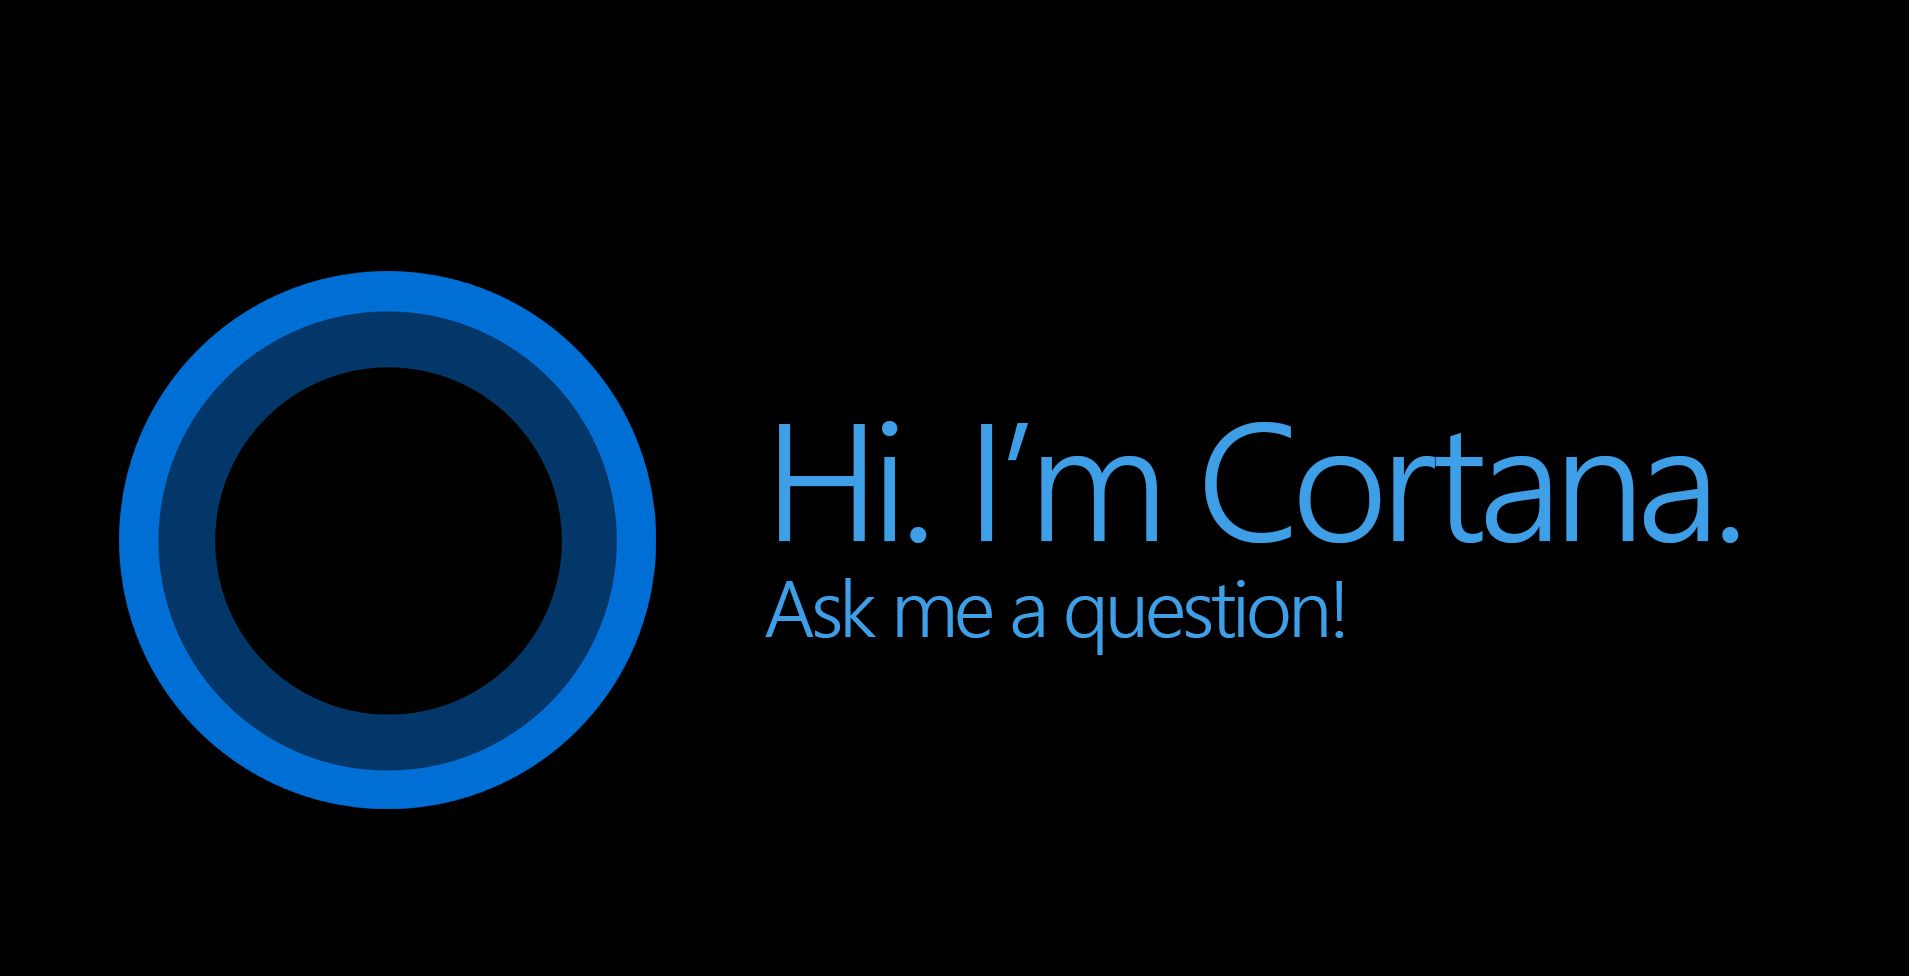 Apa Itu Cortana? Mengenal Pengertian Cortana di Windows 10